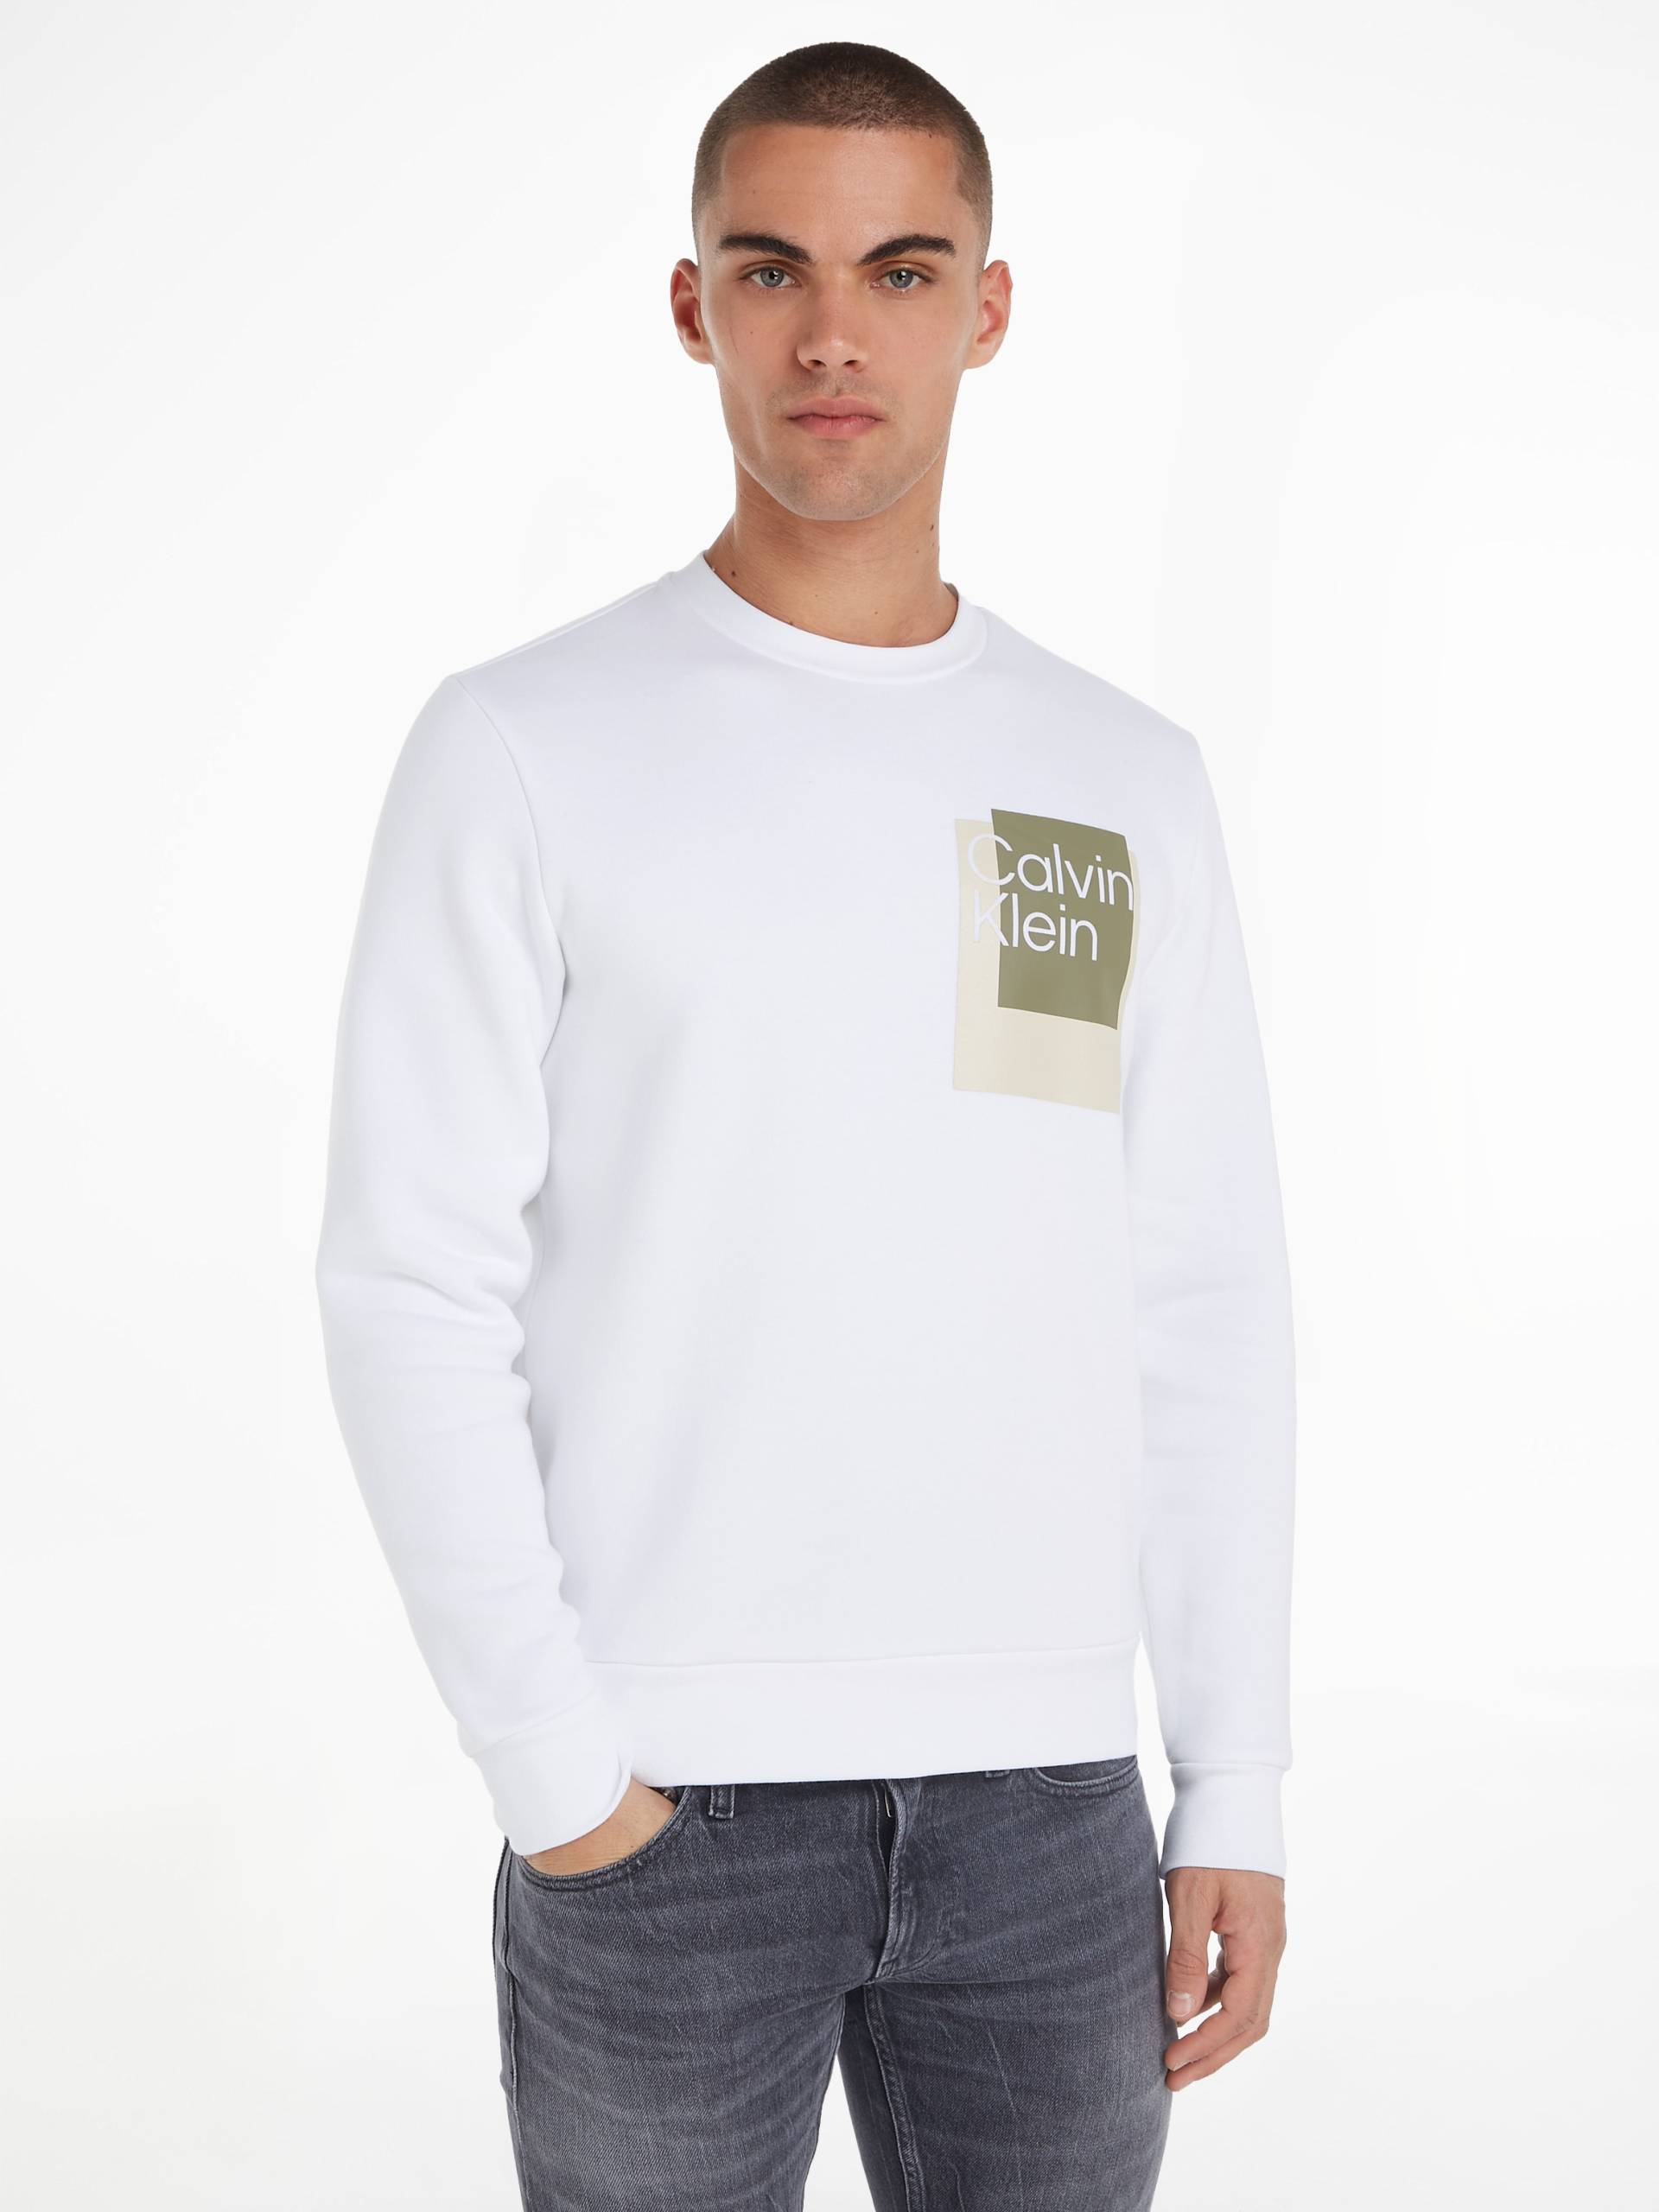 Calvin Klein Sweatshirt »OVERLAY BOX LOGO SWEATSHIRT« von Calvin Klein